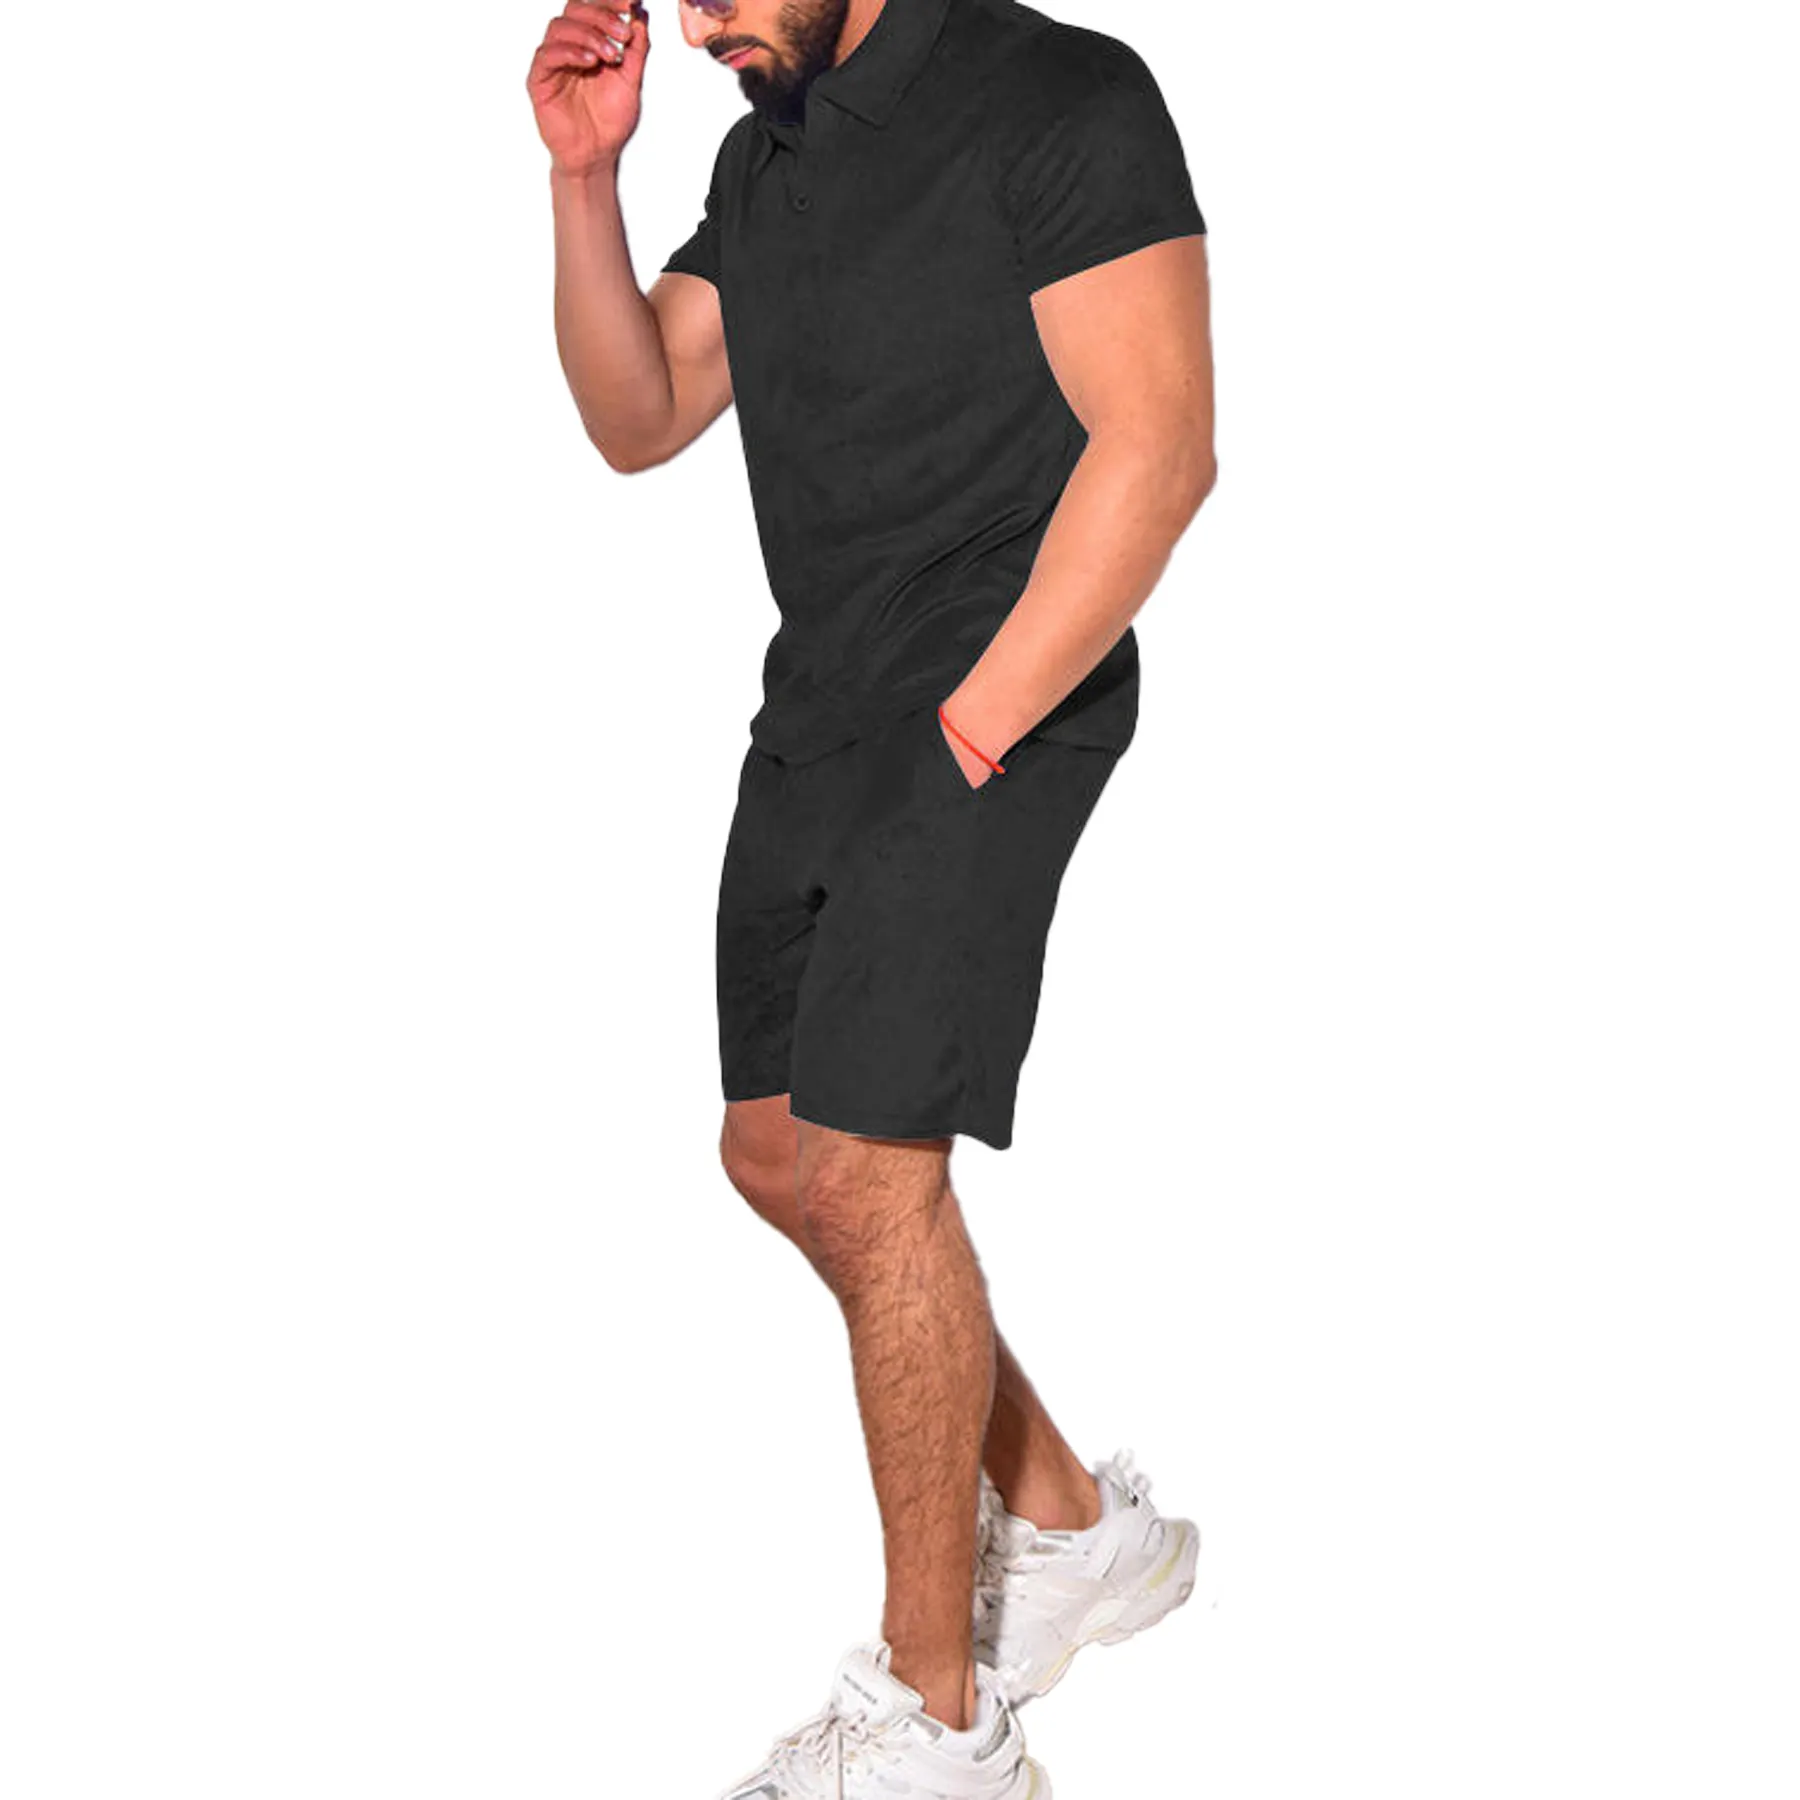 Yeni varış sert banyo havlusu Polo GÖMLEK şort erkek Set düz renk moda Hip Hop Streetwear artı boyutu takım elbise özel fabrika yaz